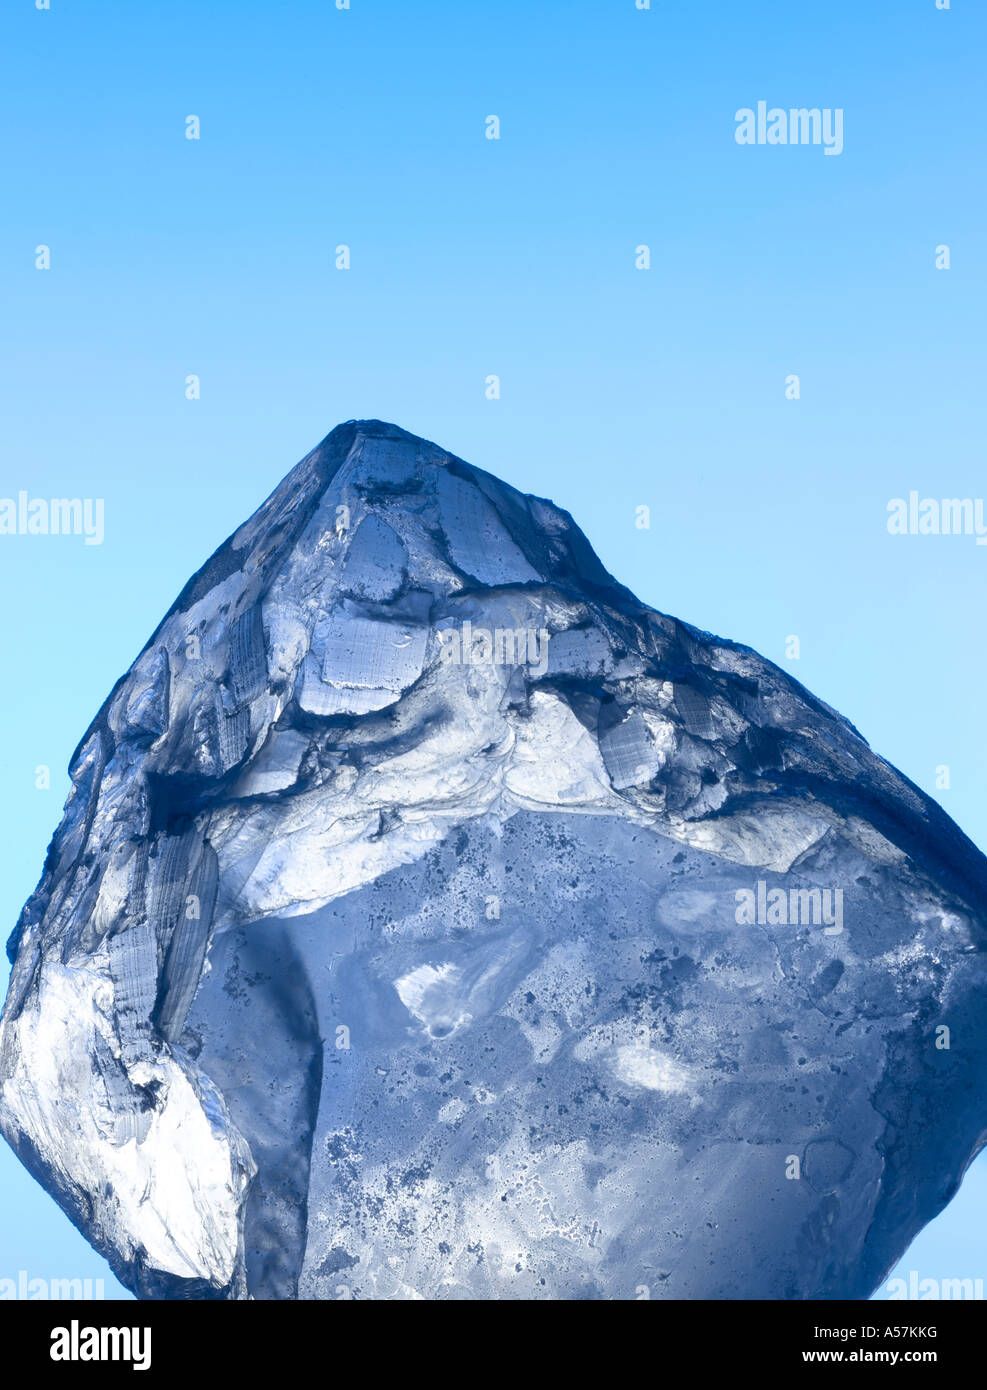 Ein Eisblock / Würfel auf einem blauen Himmelshintergrund Stockfoto